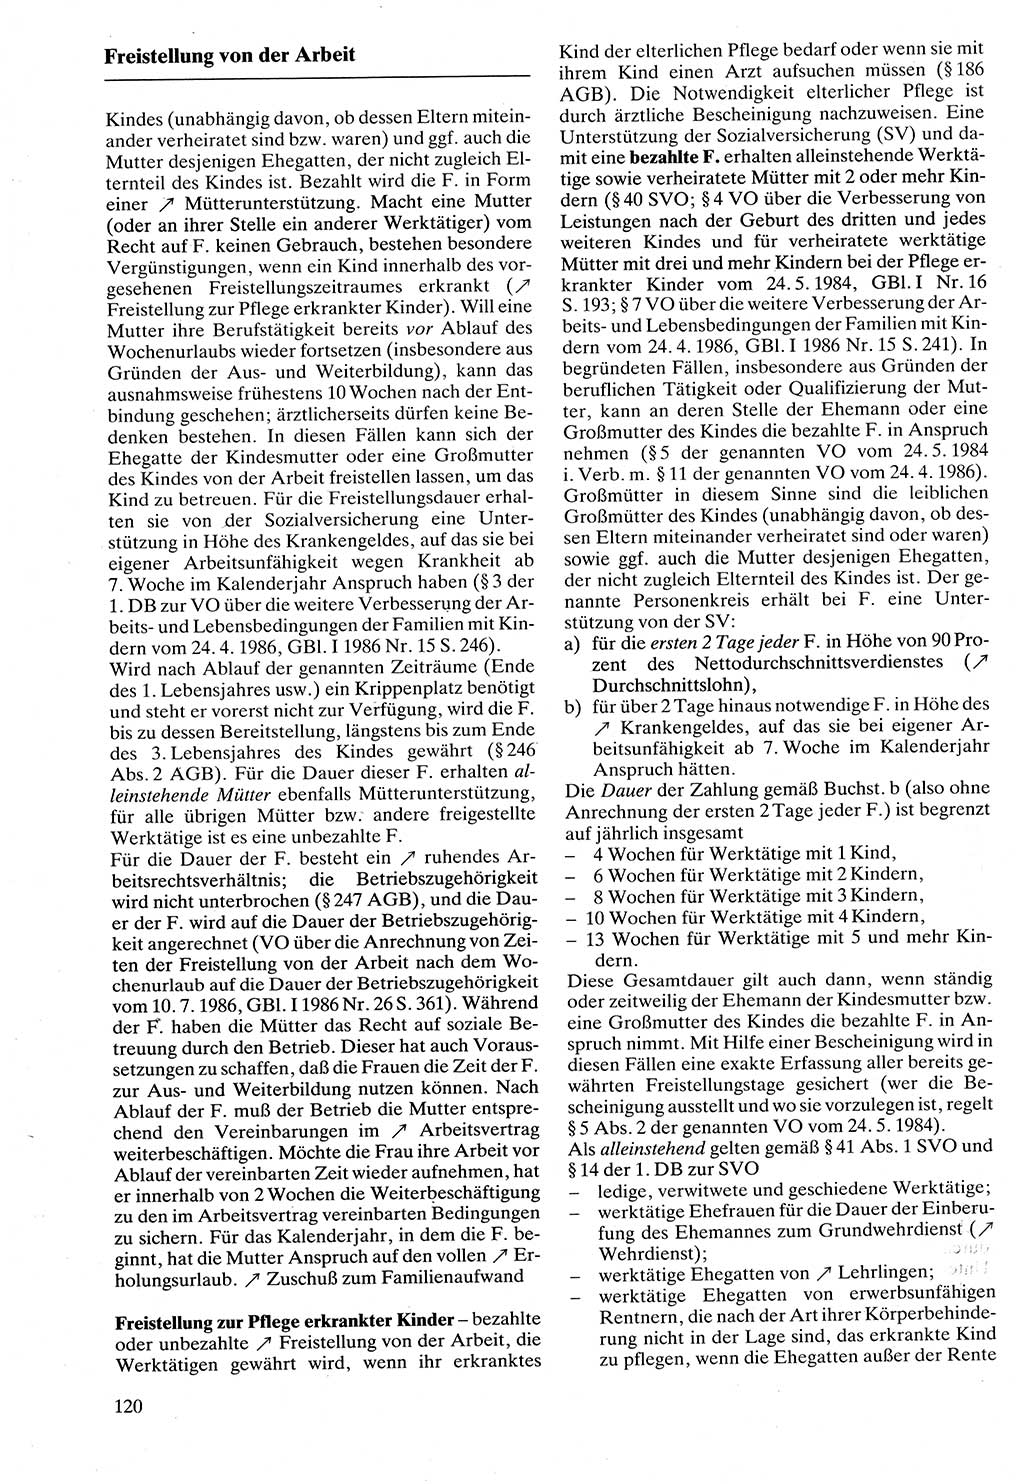 Rechtslexikon [Deutsche Demokratische Republik (DDR)] 1988, Seite 120 (Rechtslex. DDR 1988, S. 120)